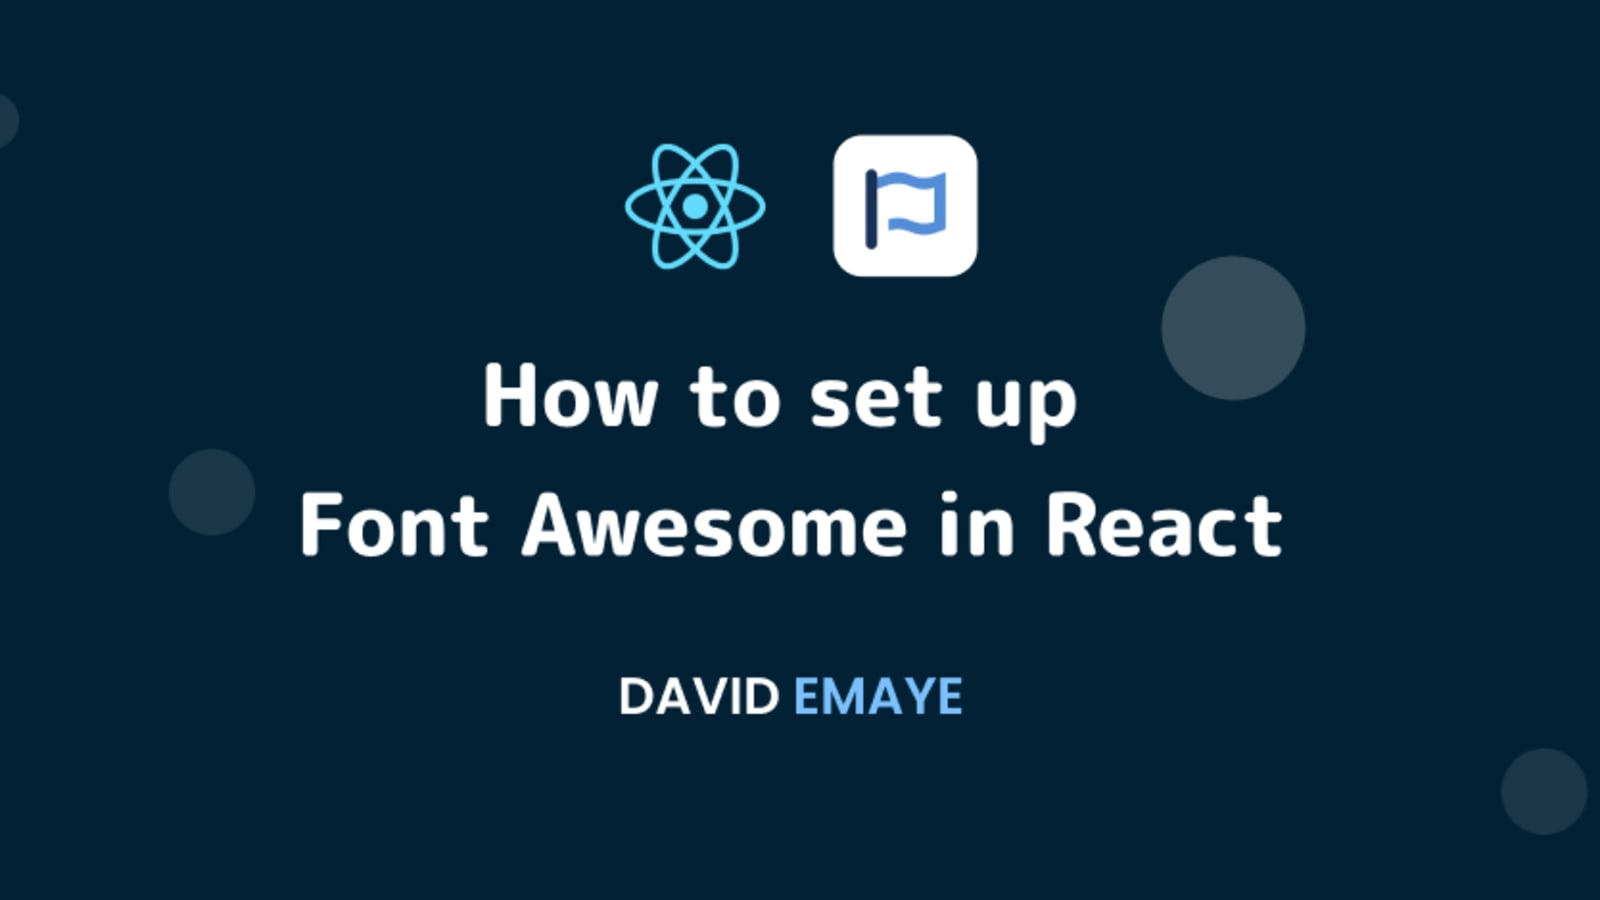 How to set up Font Awesome in React - thiết kế giao diện người dùng: Thiết kế giao diện web đã bao giờ dễ dàng đến vậy! Học cách thiết lập Font Awesome trong React để tạo ra những thiết kế giao diện tuyệt đẹp và ấn tượng. Với Font Awesome, bạn sẽ dễ dàng tạo ra các biểu tượng và hình ảnh độc đáo để phục vụ cho mục đích của bạn.